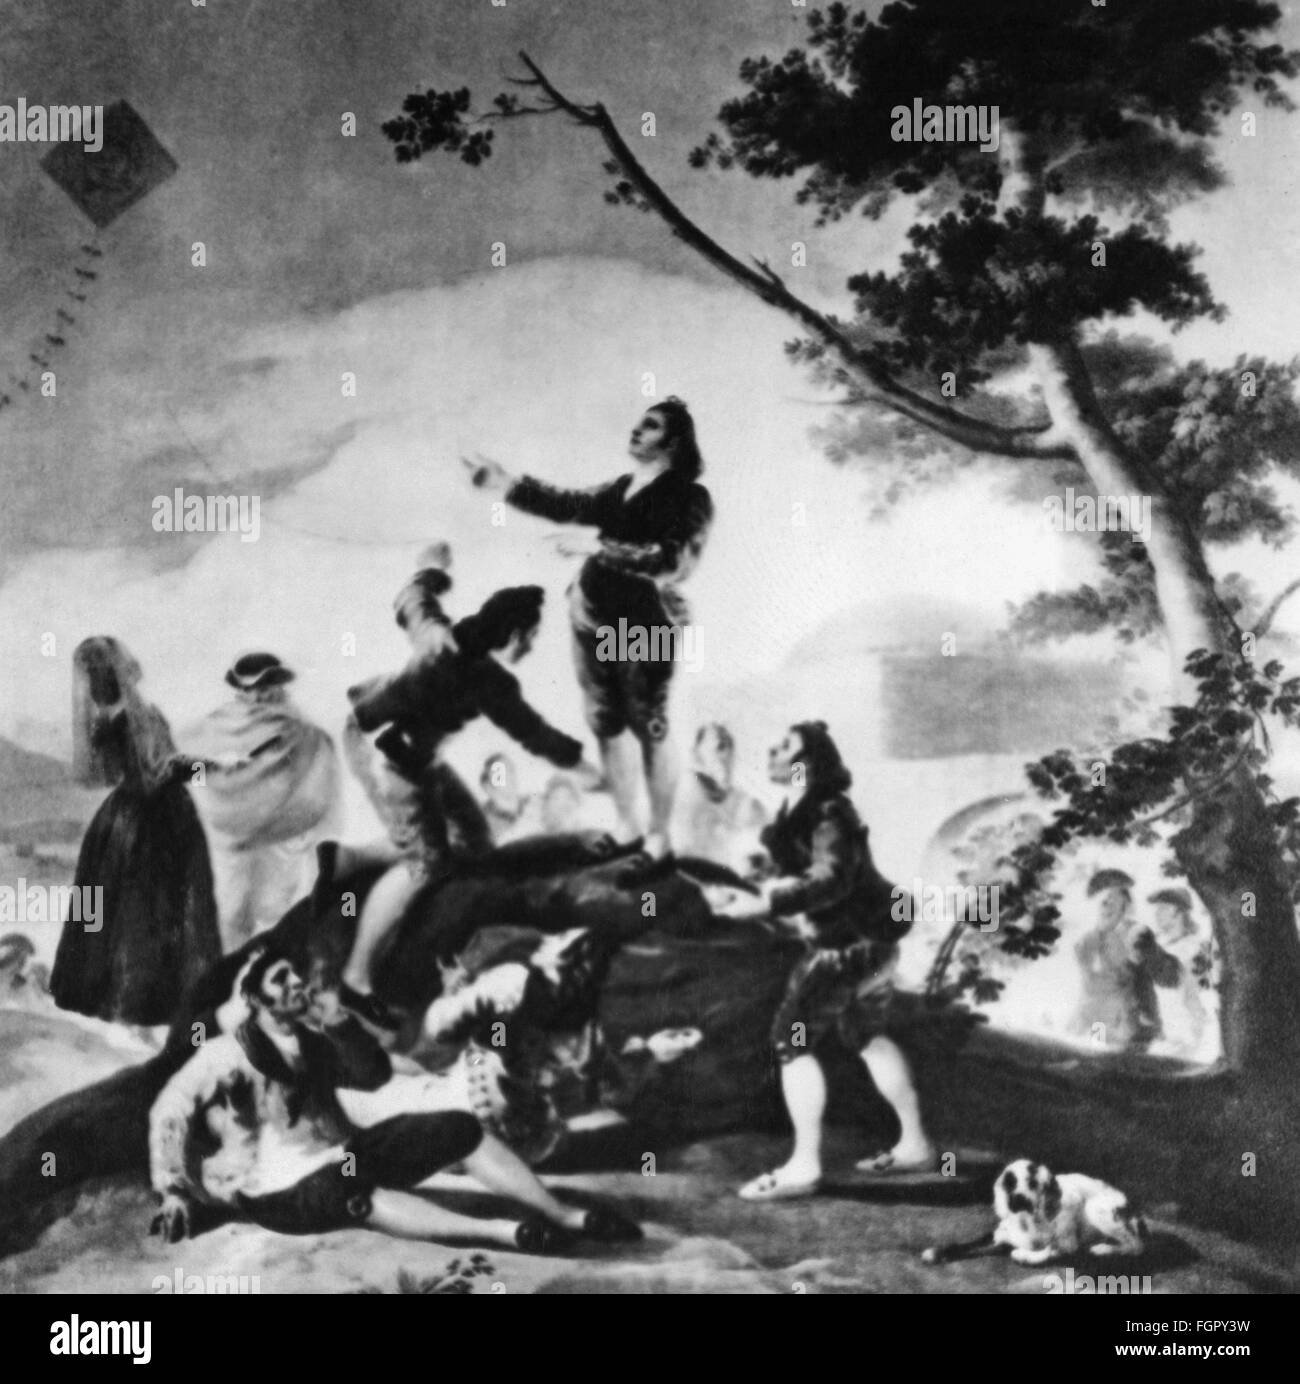 Loisirs, kitevolante, vol de cerf-volant en groupe, après peinture 'la Cometa', par Francisco de Goya y Lucientes (1746 - 1828), 1778, droits additionnels-Clearences-non disponible Banque D'Images